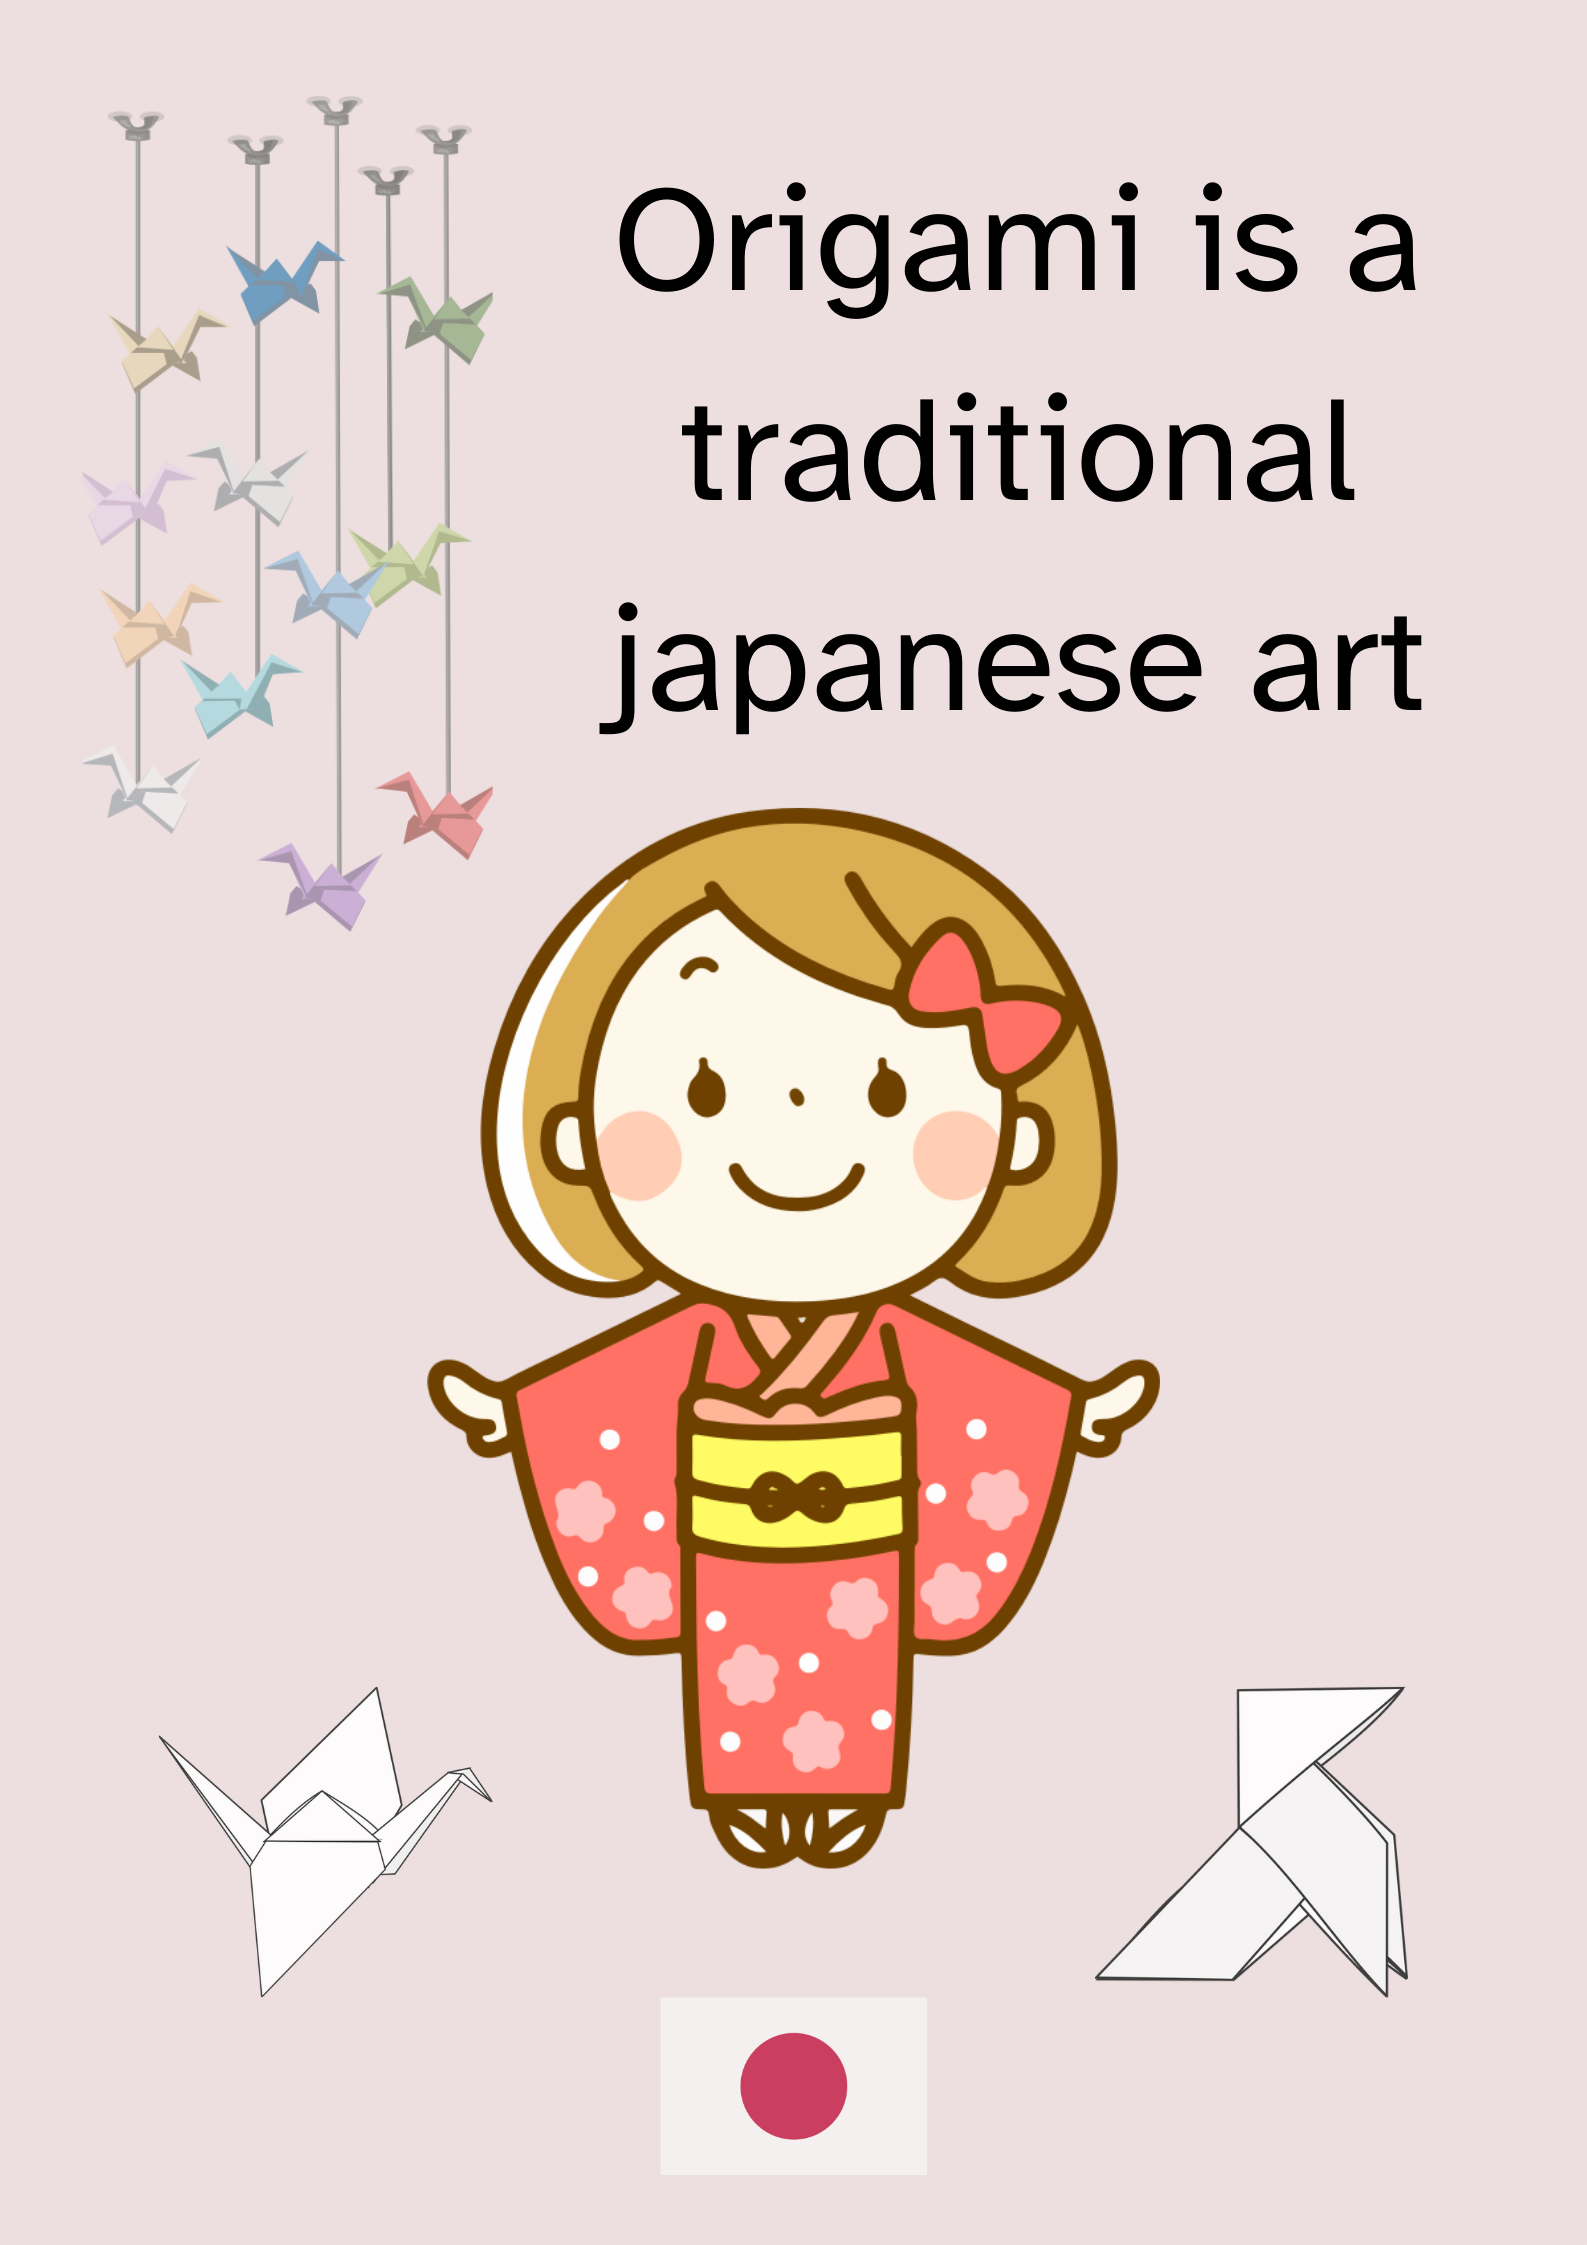 En la imagen puedes ver un póster titulado Origami is a traditional japanese art, compuesto por varias figuras de aves hechas con origami, la bandera de Japón y una niña vestida con un kimono